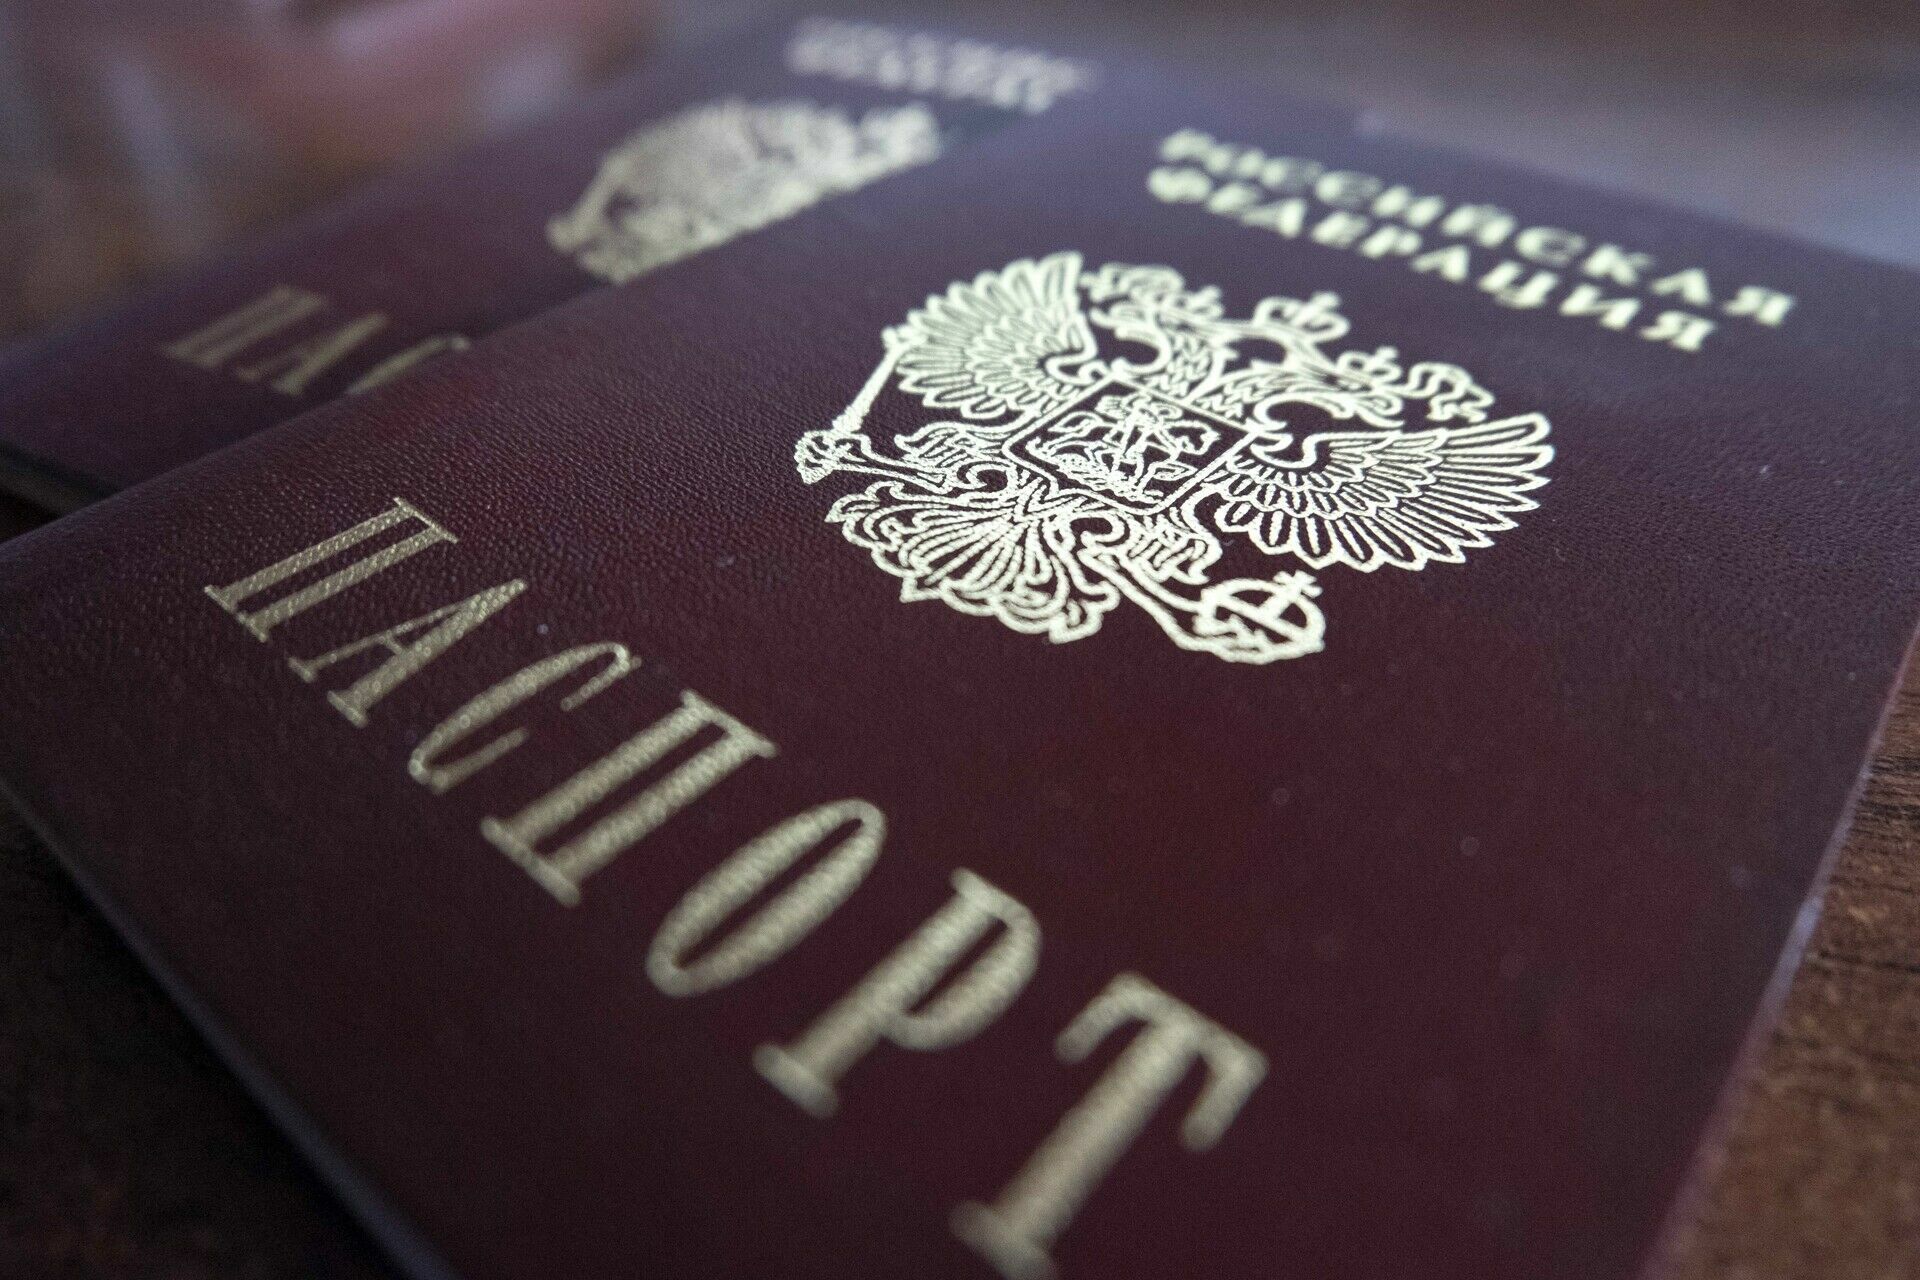 МВД решило изменить паспорта россиян